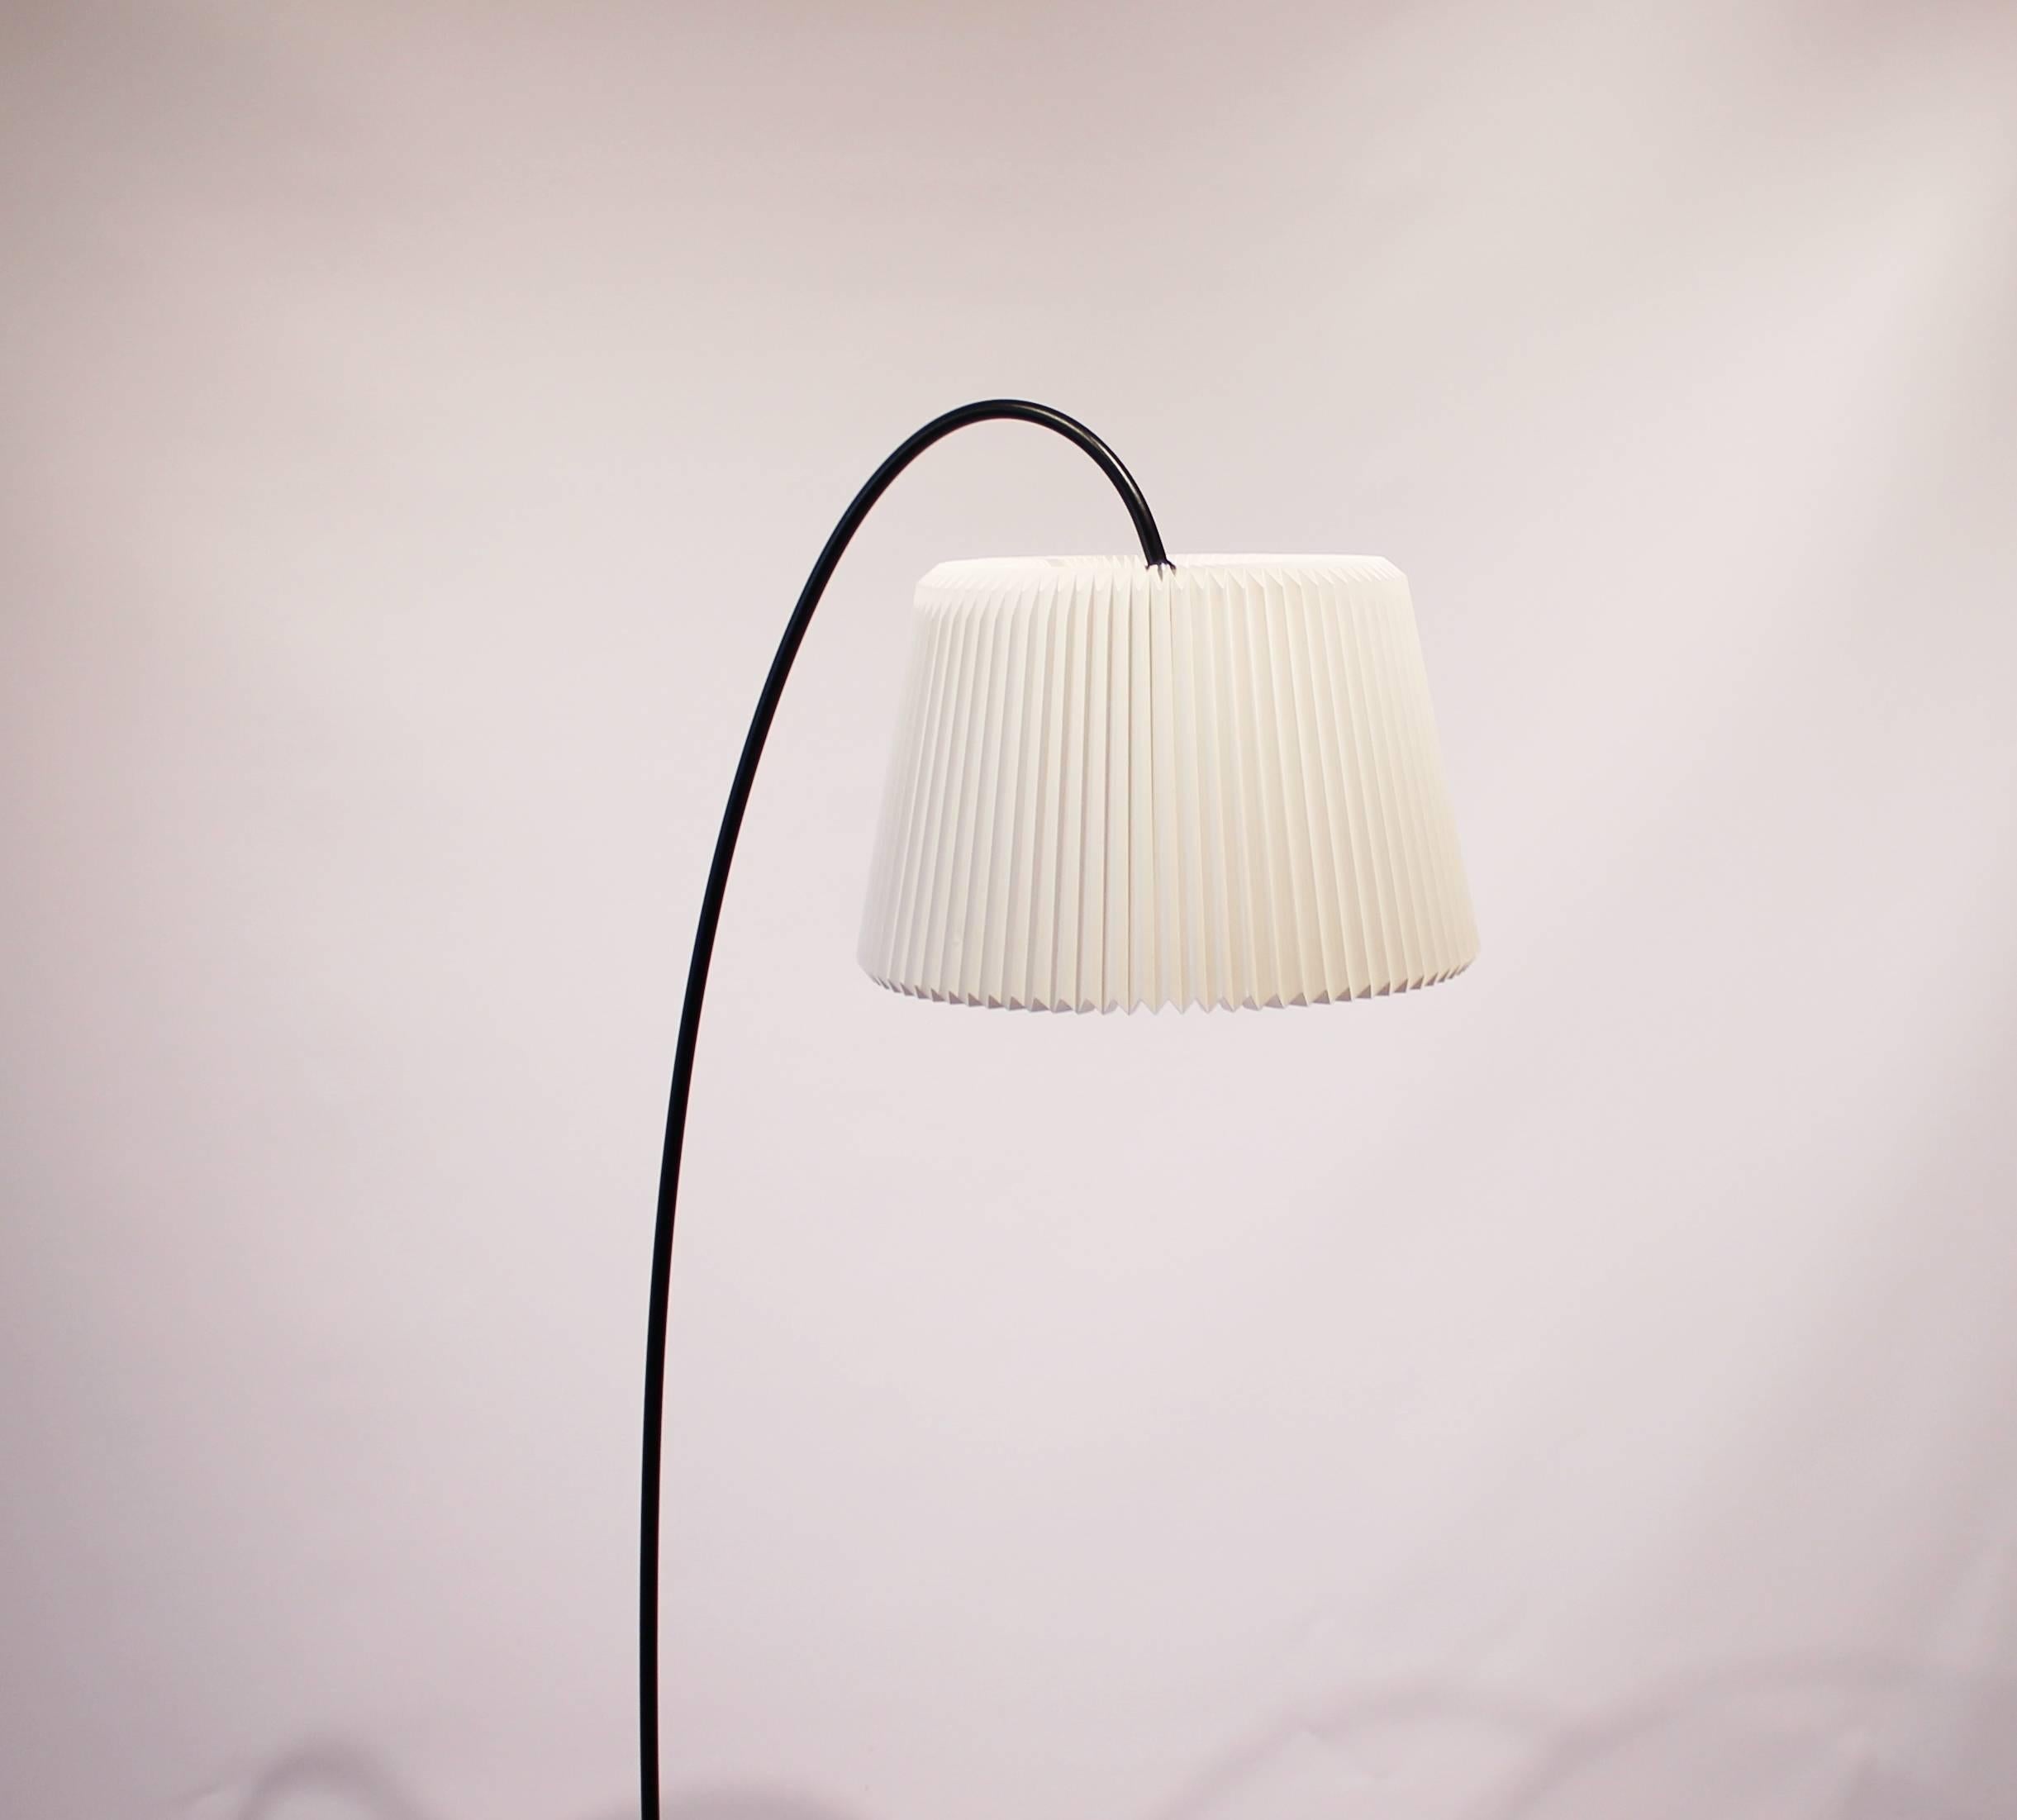 Mid-20th Century Floor Lamp, Model 320, Snowdrop by Harrit-Sørensen-Samson for Le Klint